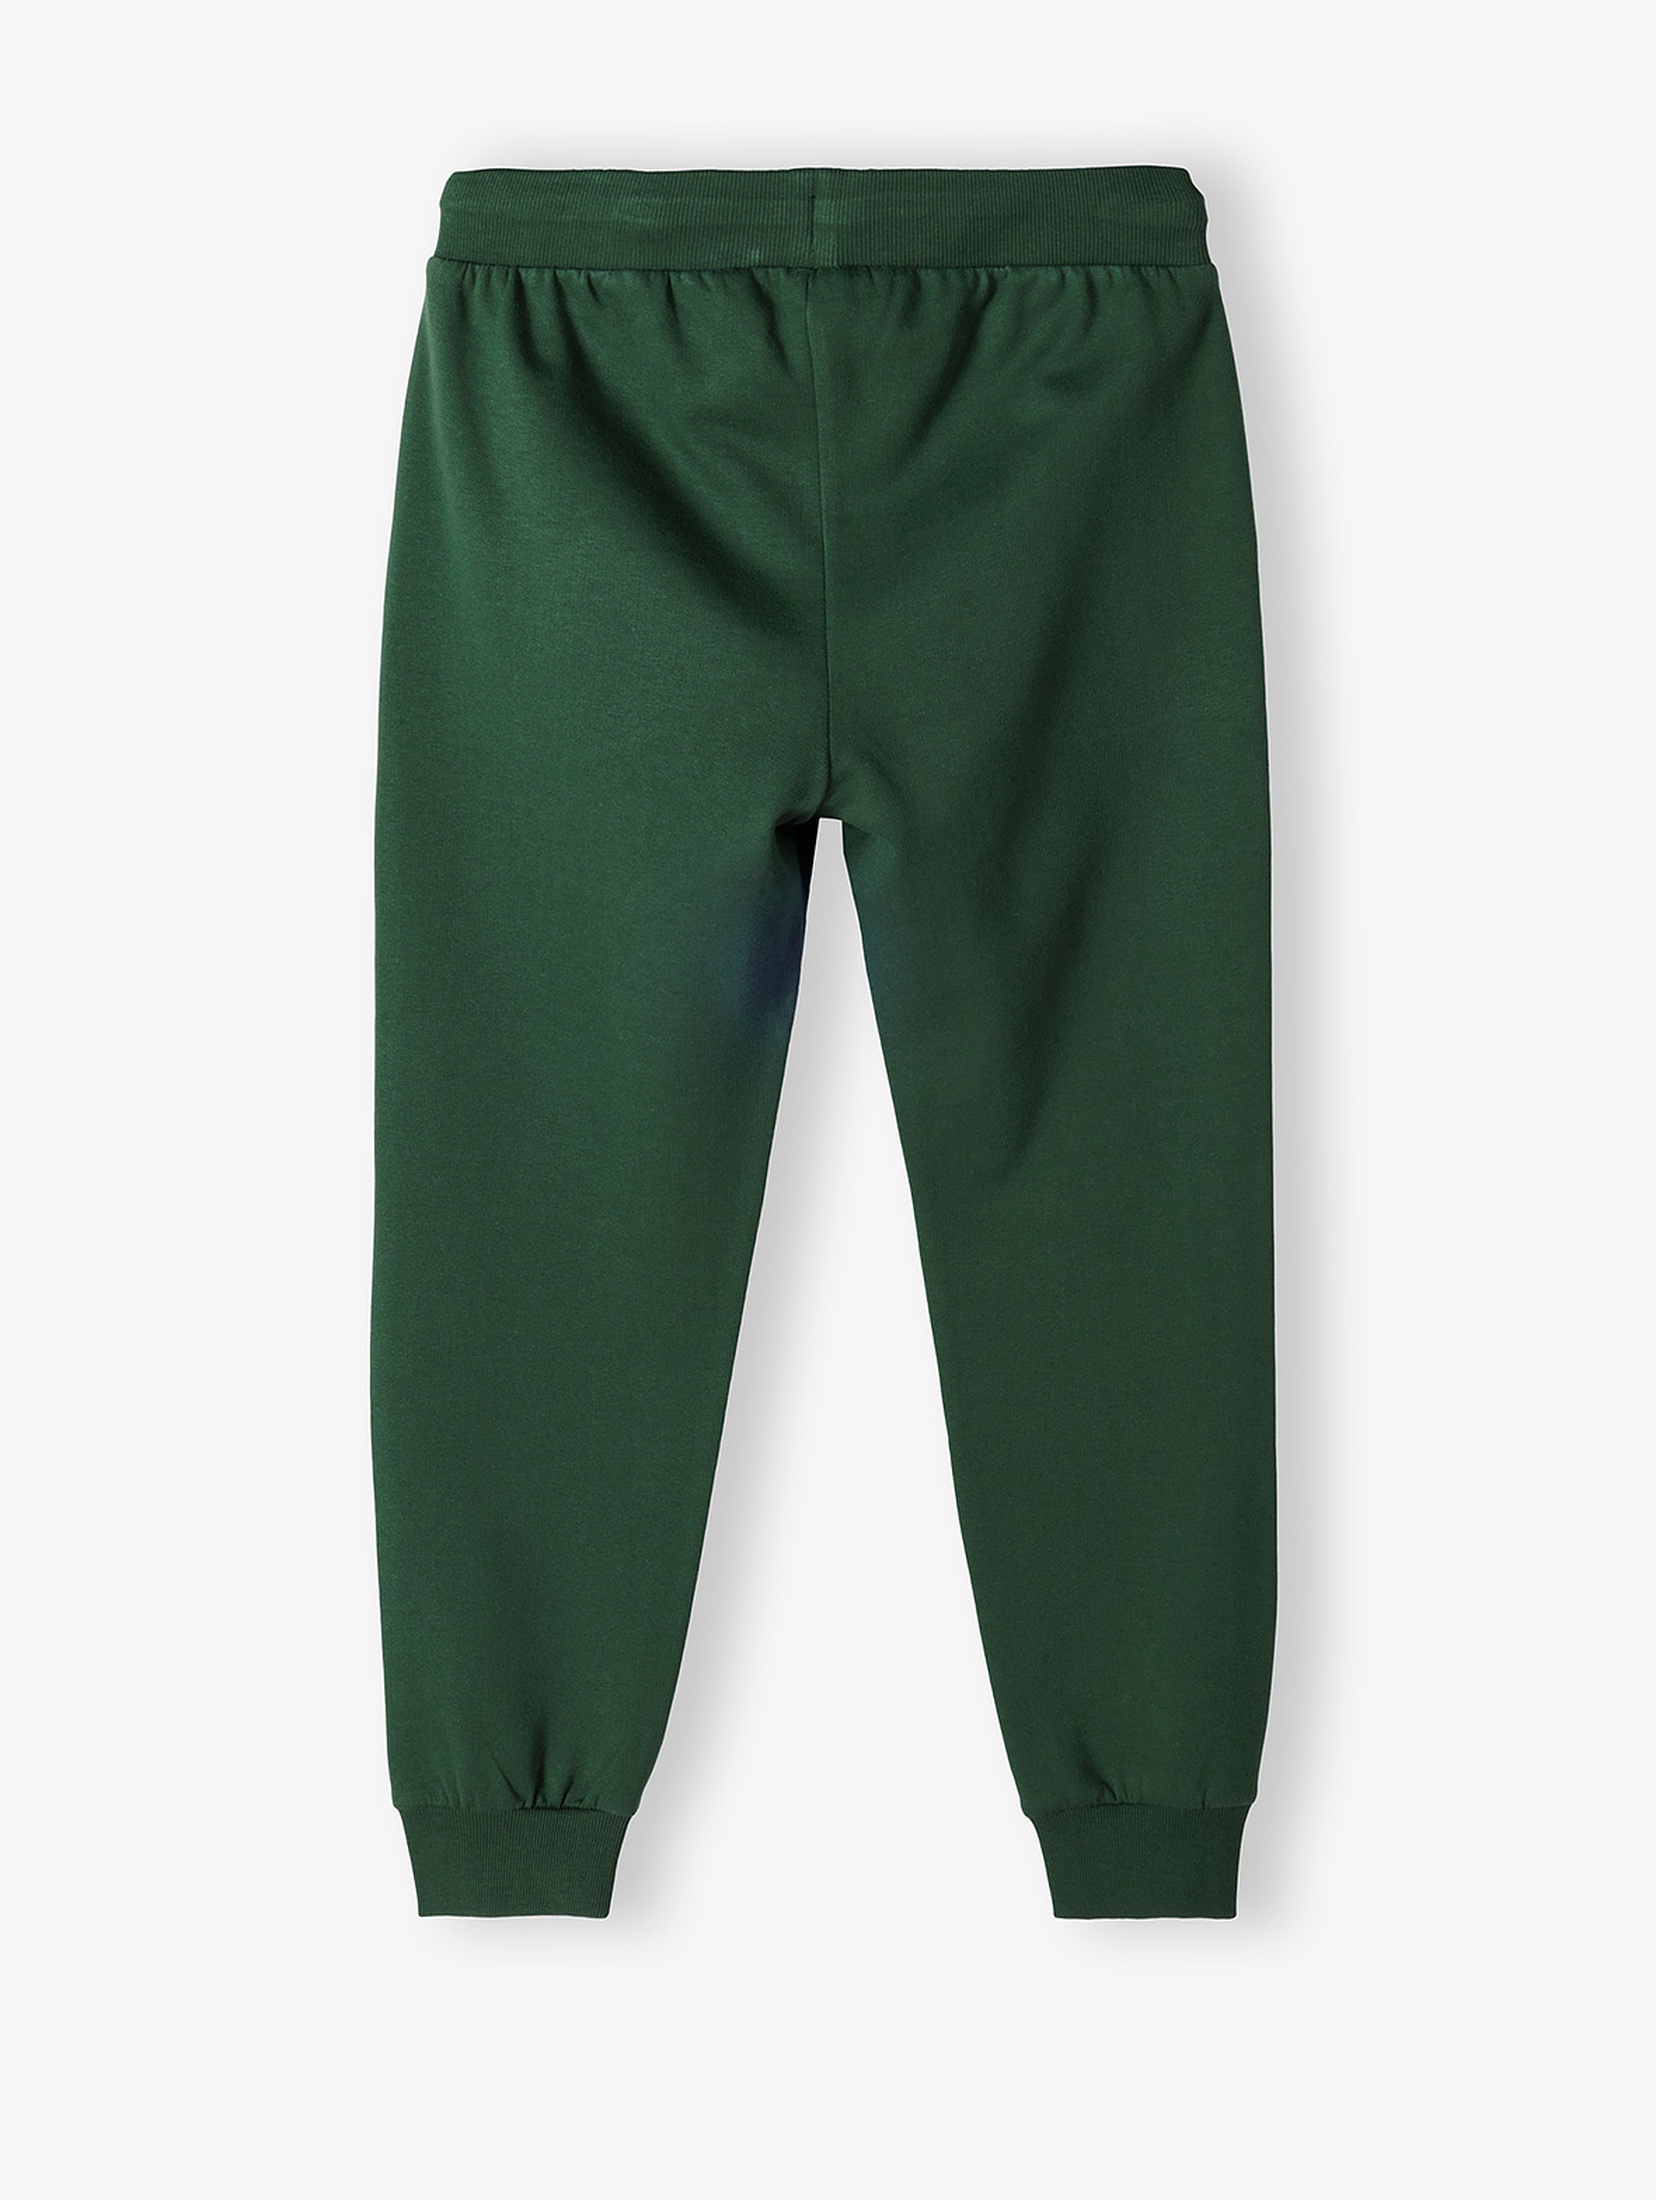 Zielone spodnie dresowe dla chłopca